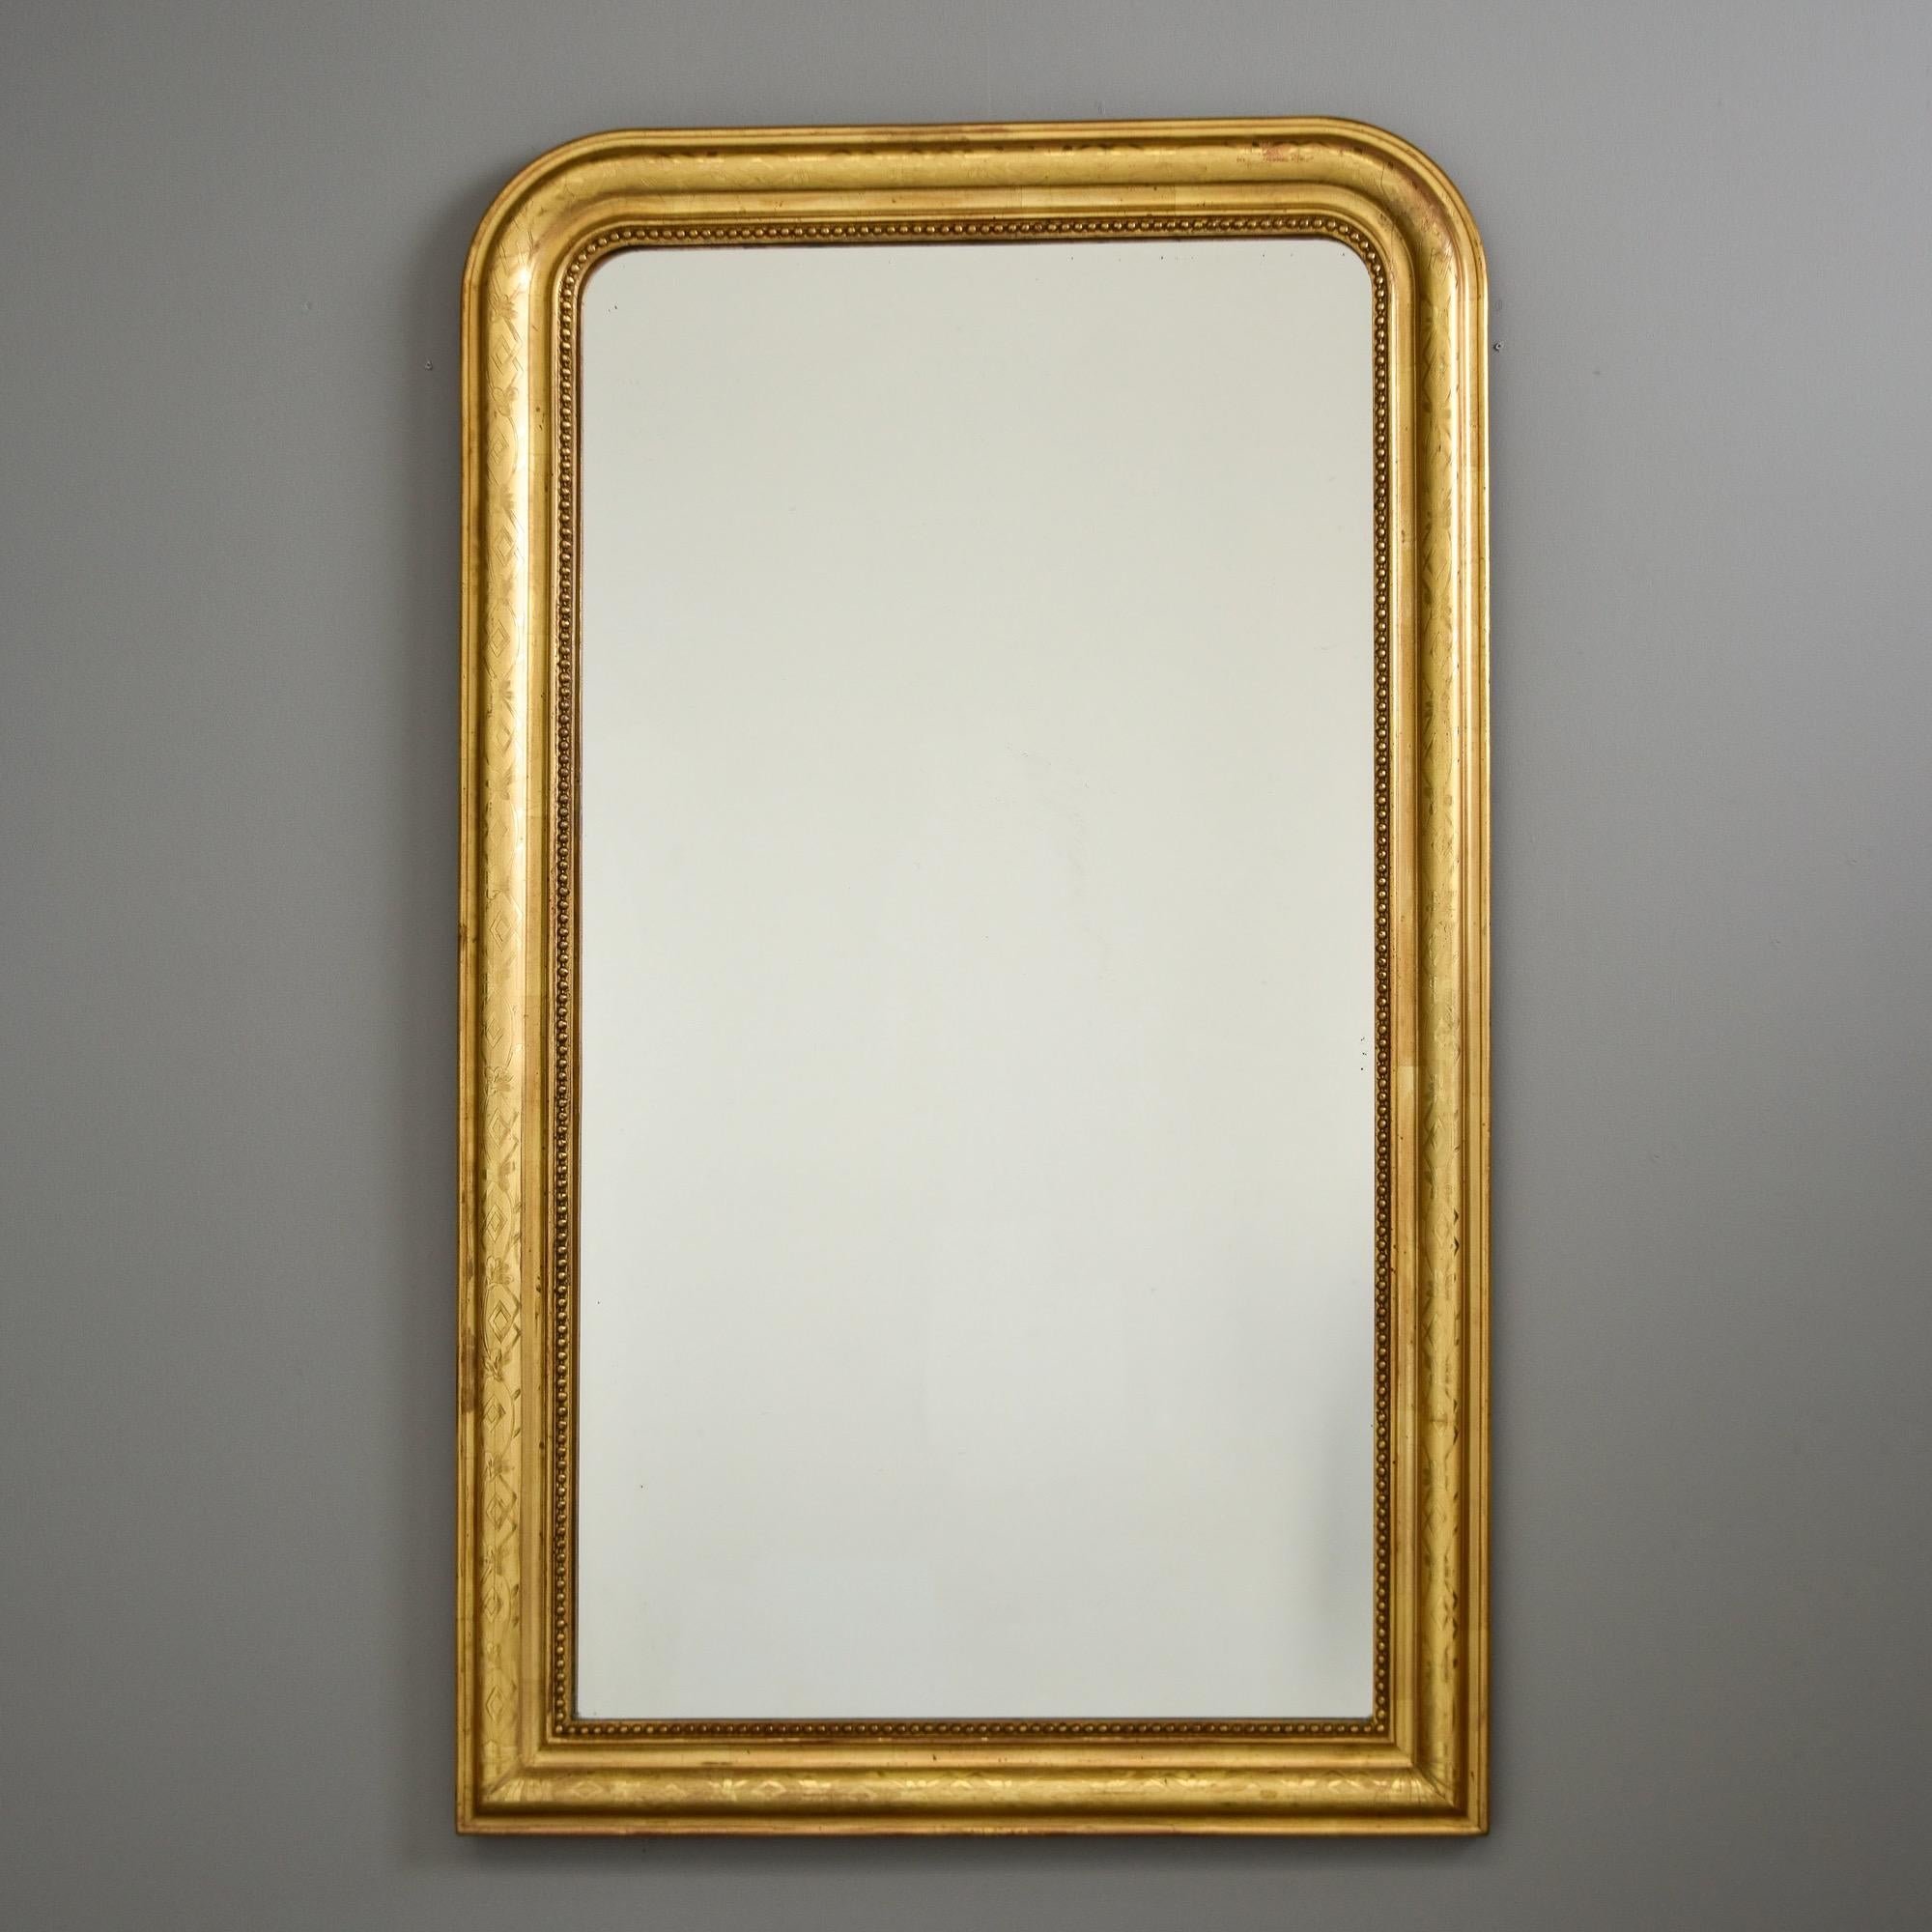 Dieser in Frankreich gefundene Spiegel mit Goldholzrahmen von Louis Philippe stammt aus den 1870er Jahren. Der Spiegel wurde vor kurzem ersetzt - wir haben dieses Stück wie abgebildet von einem französischen Händler erworben. Subtiles geätztes